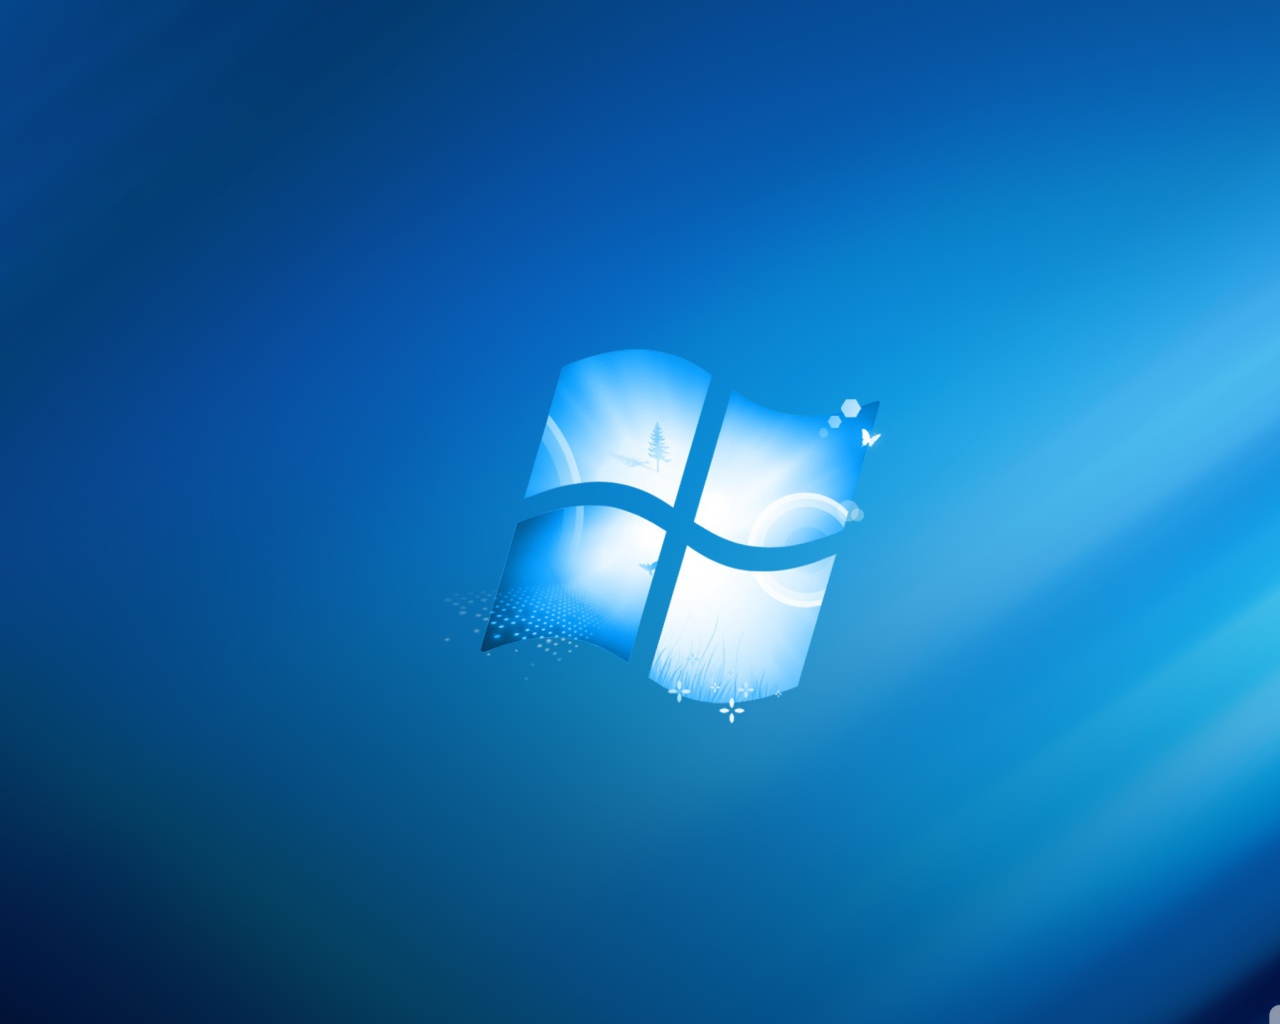 Windows Blue Theme Desktop Wallpaper